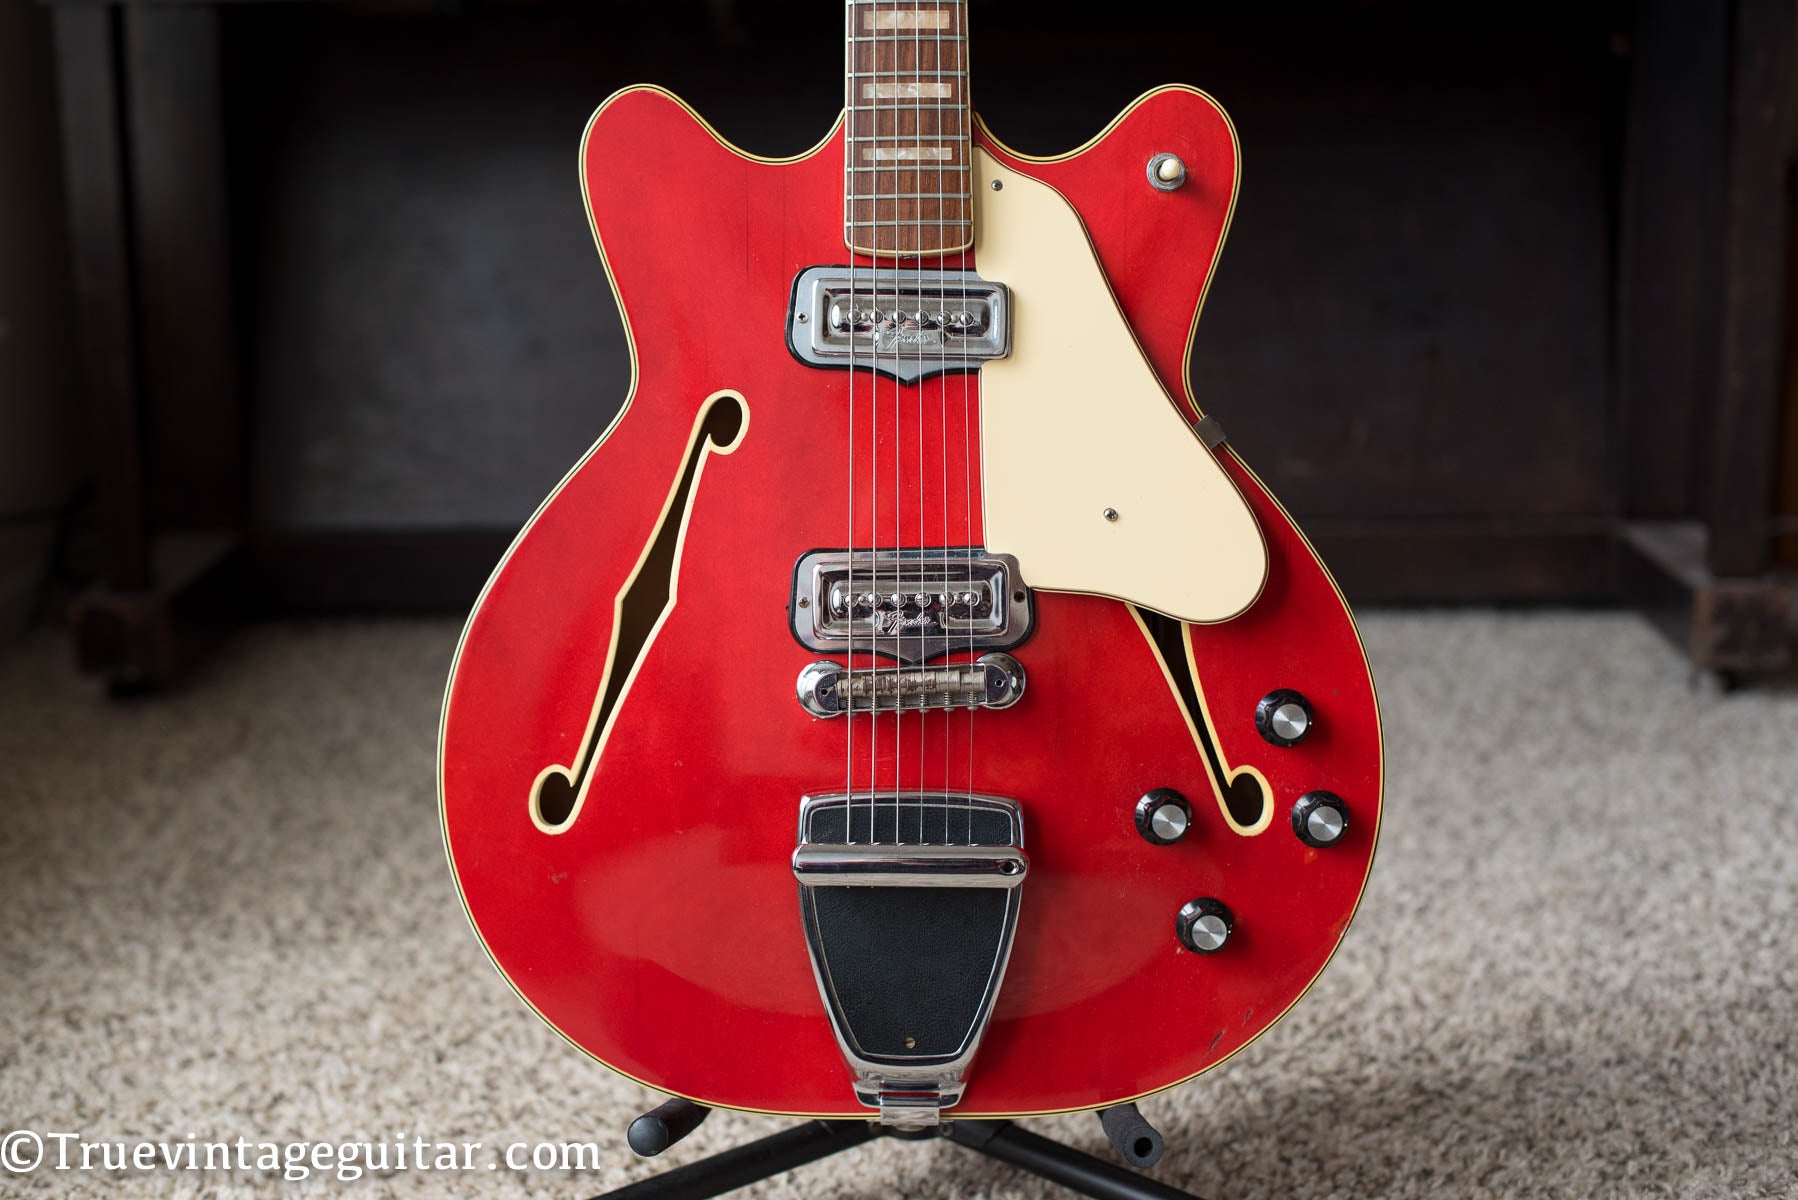 Fender Coronado red electric guitar vintage 1967